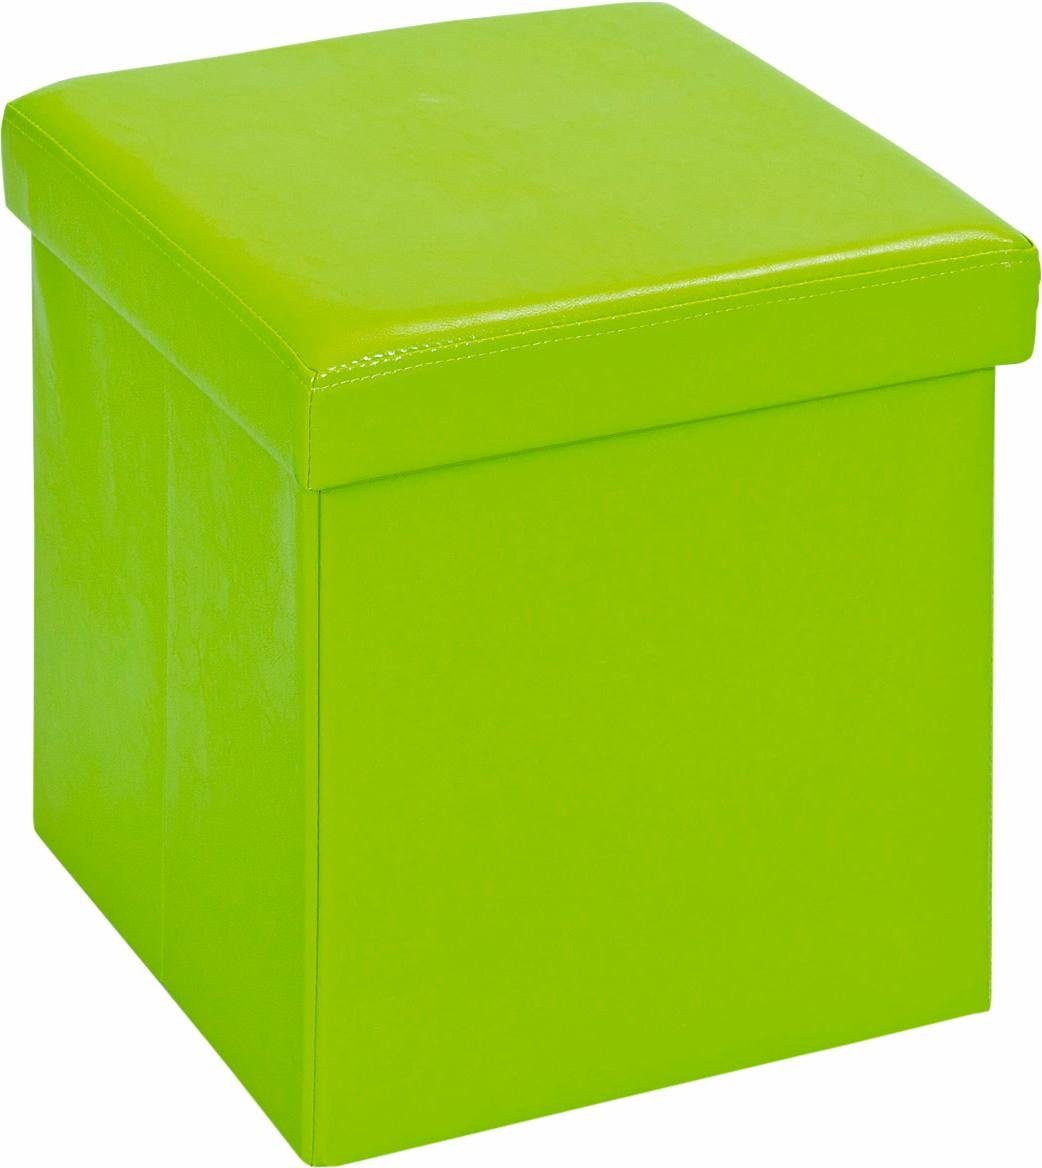 Home affaire Faltbox SETTI grün